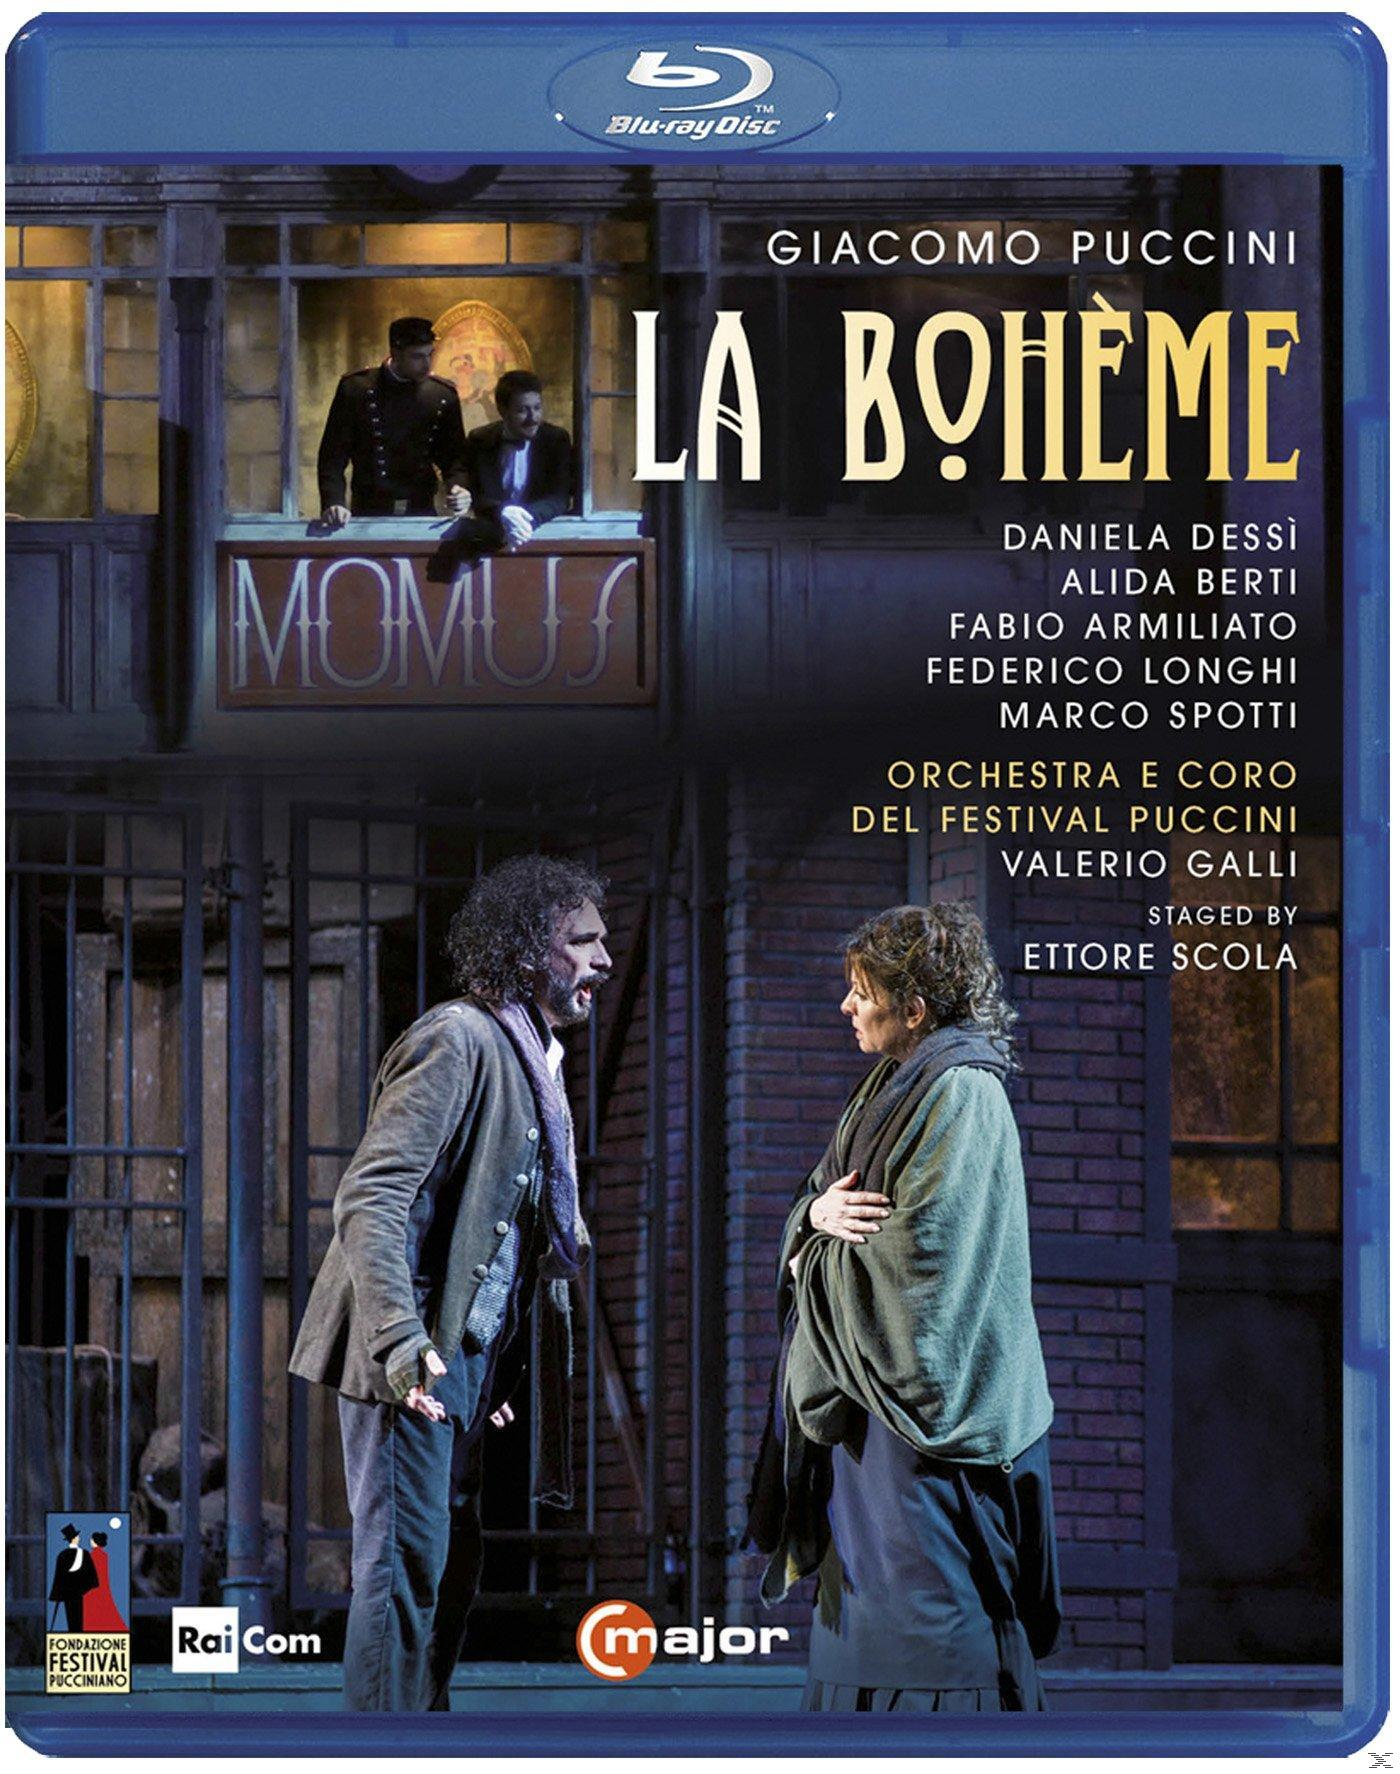 VARIOUS, Orchestra Del Festival Puccini Boheme (Blu-ray) - - La